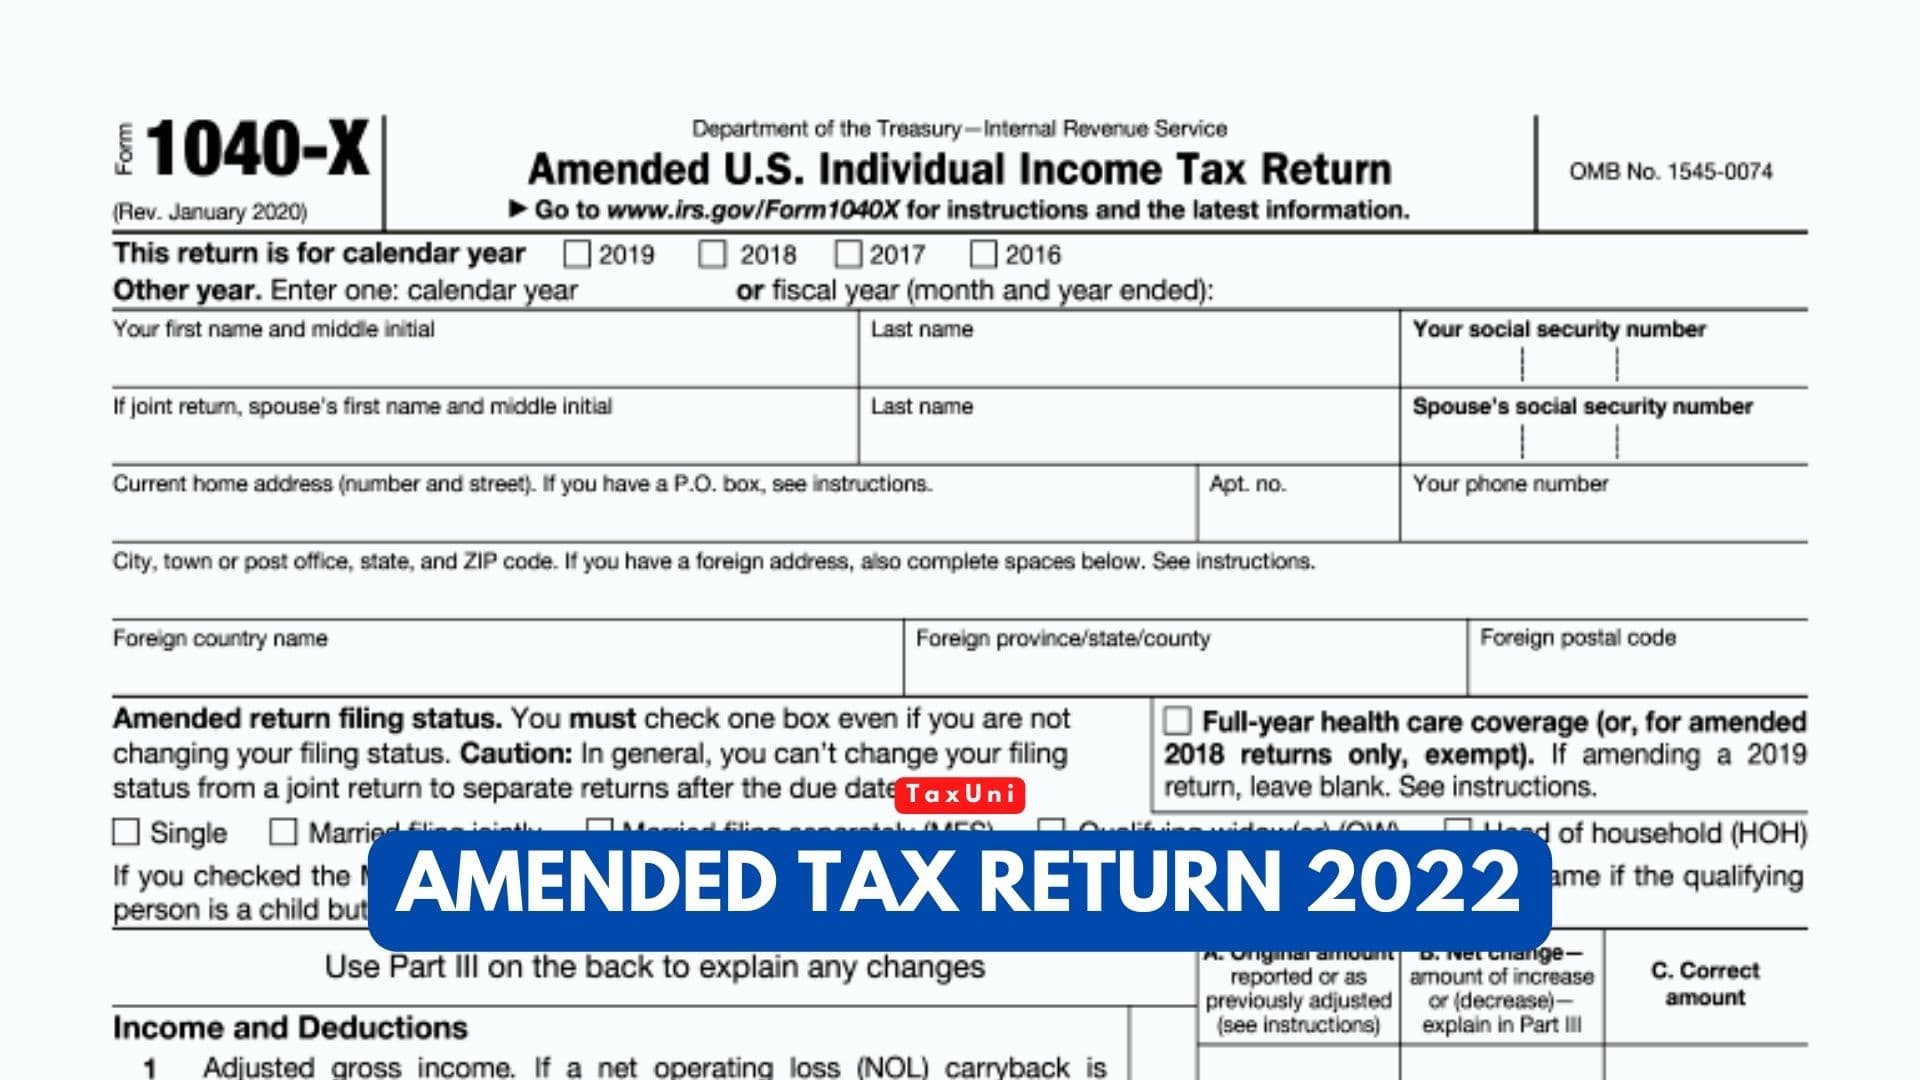 Amended Tax Return 2022